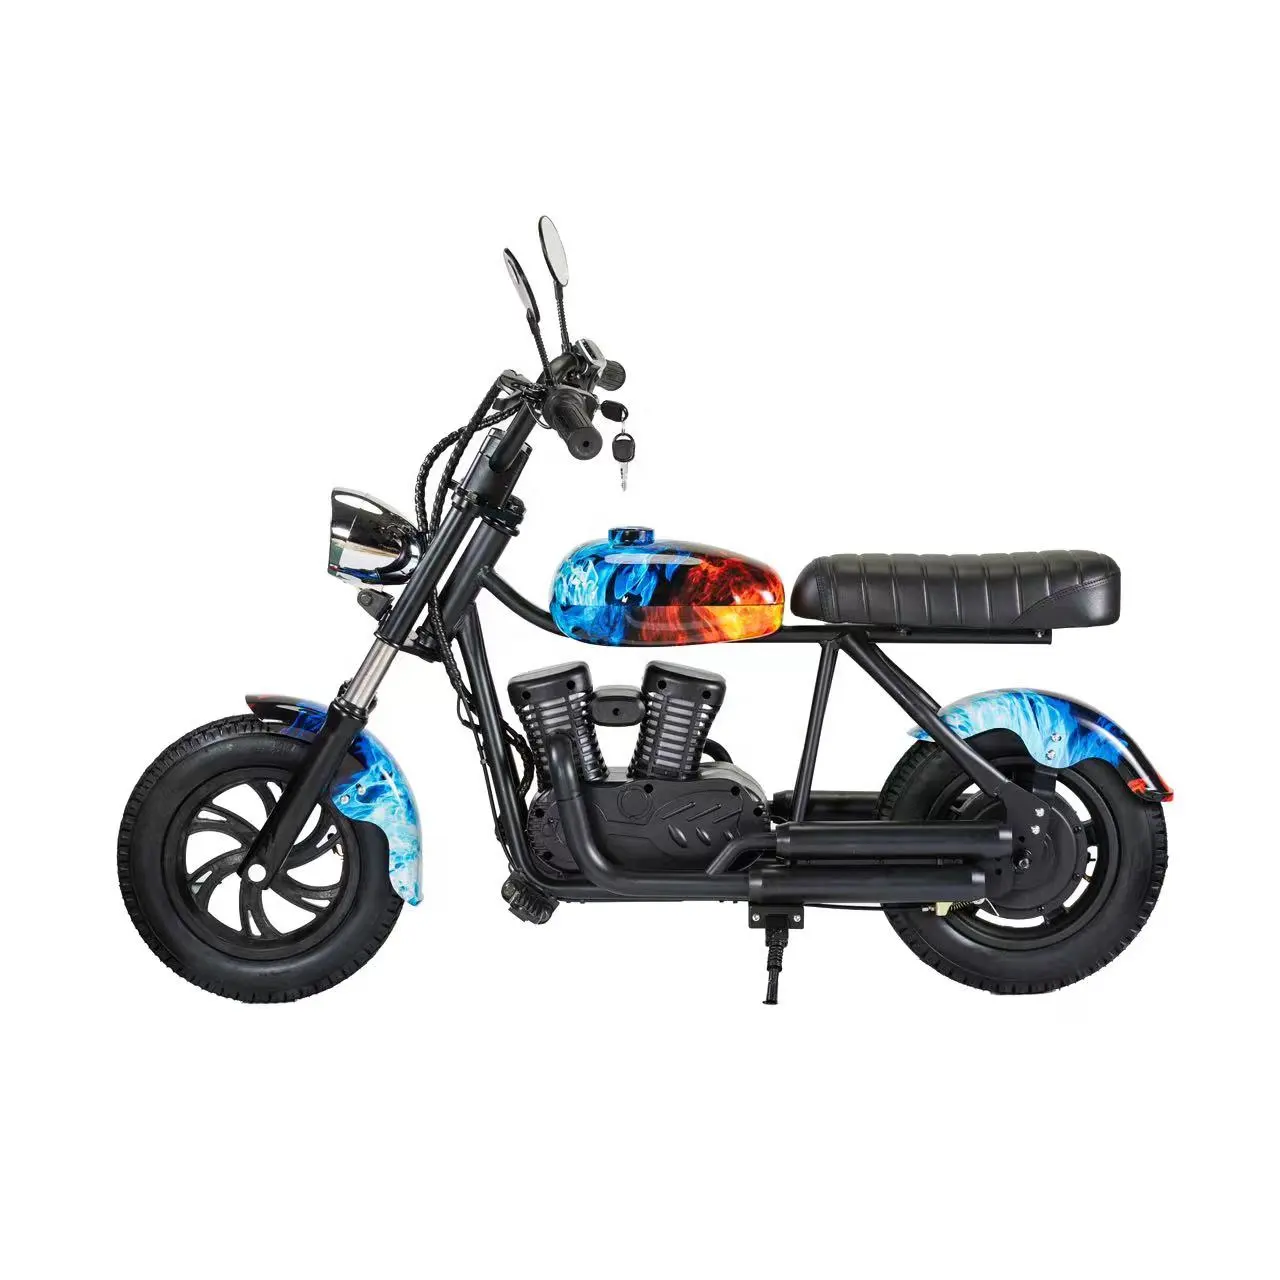 Di alta qualità nuova 180w 24V super elettrica per bambini dirt bike grande potenza pit bike moto da cross moto con CE